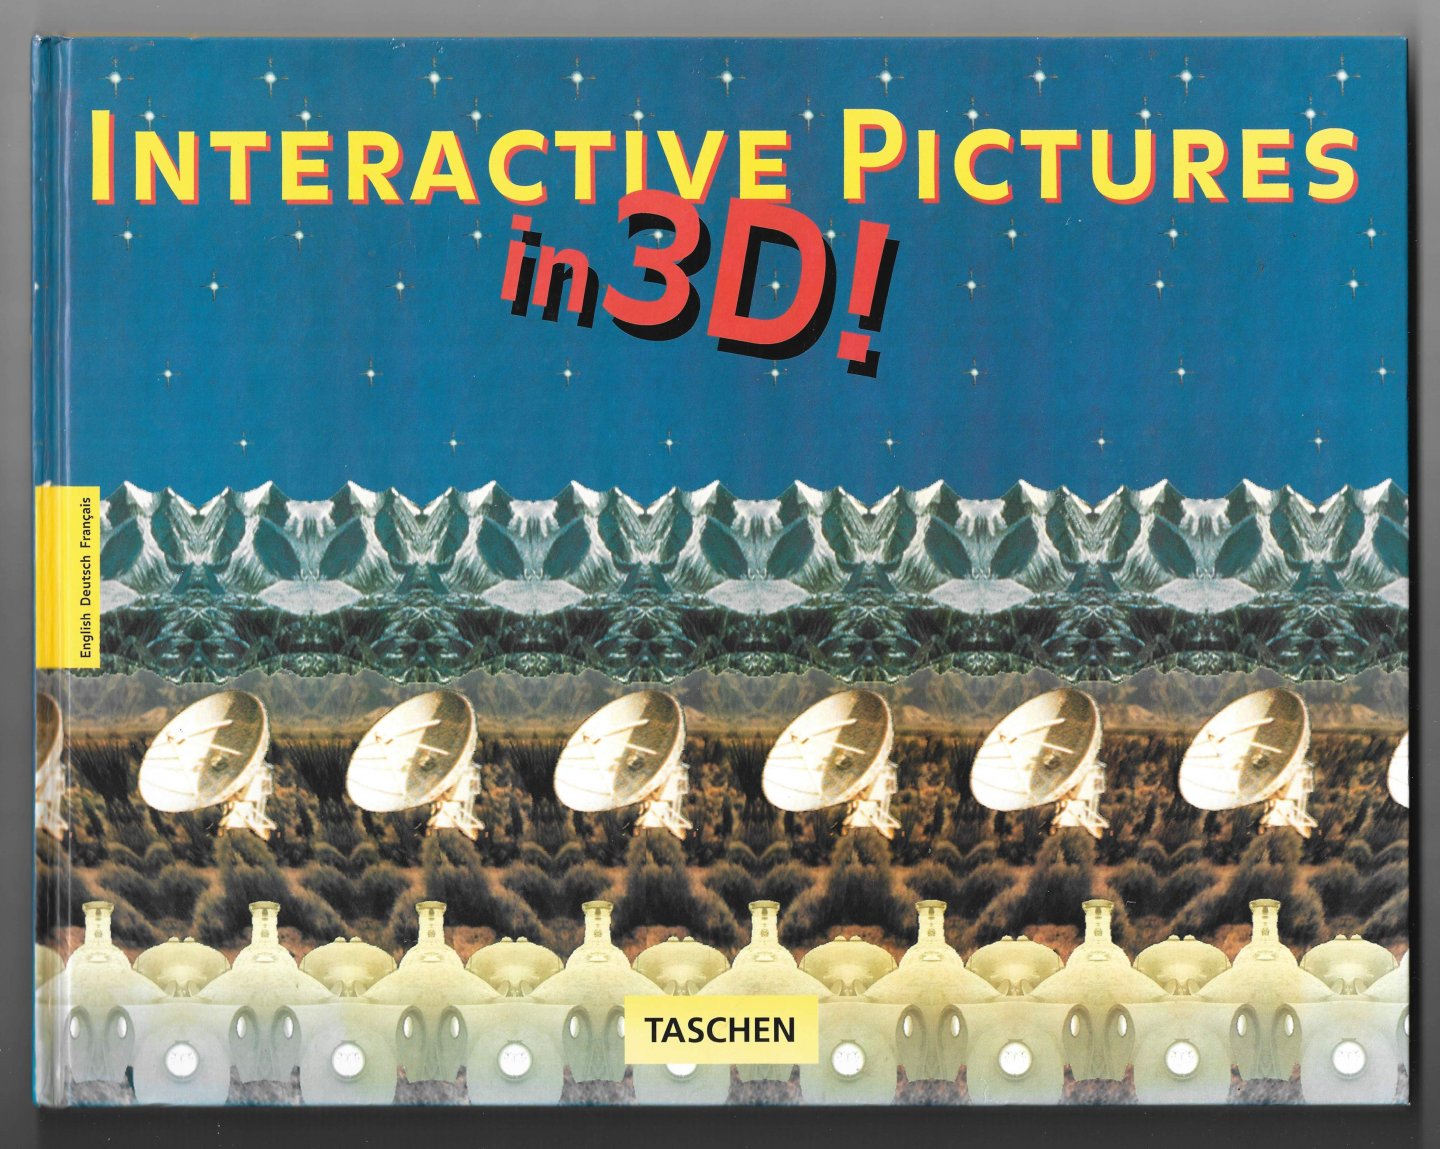 Riemschneider, Burkhard - Interactive Pictures in 3D!